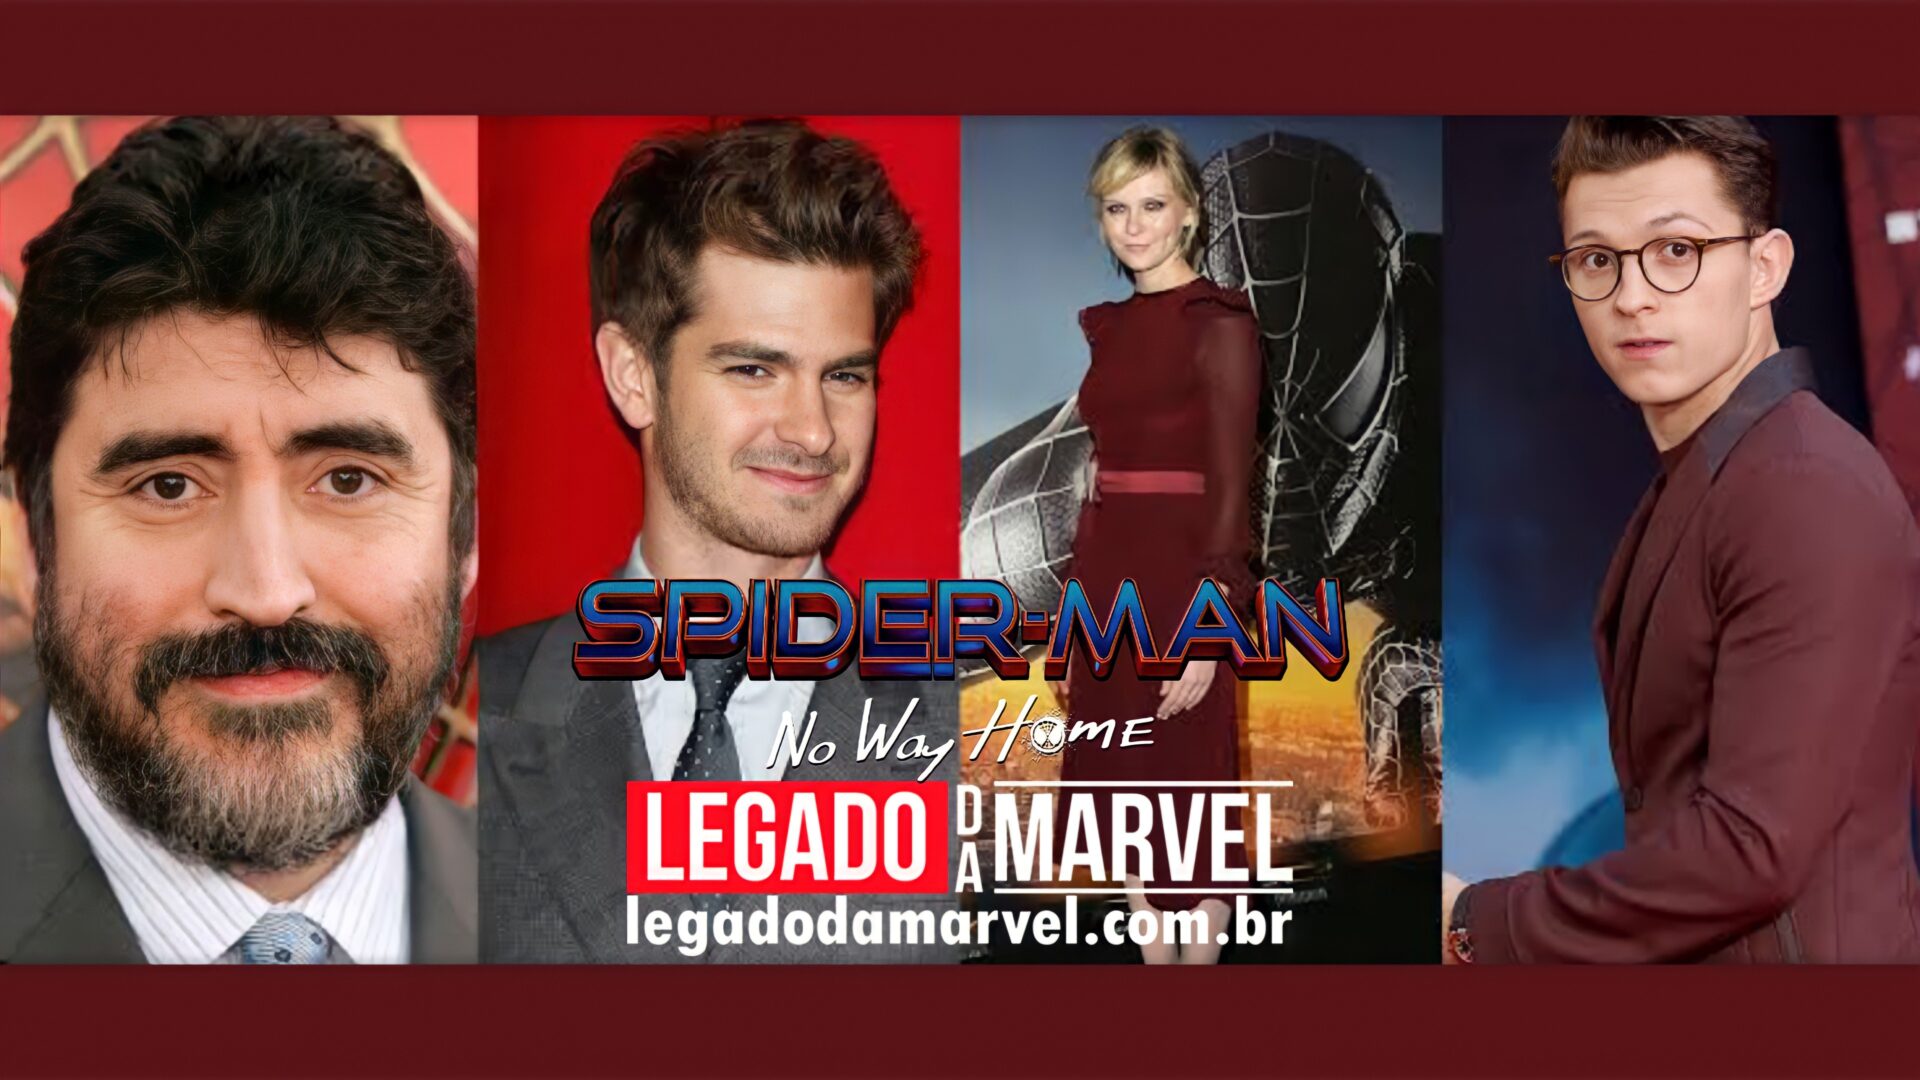  Todo o elenco de Homem-Aranha 3 está em Los Angeles para novo trailer